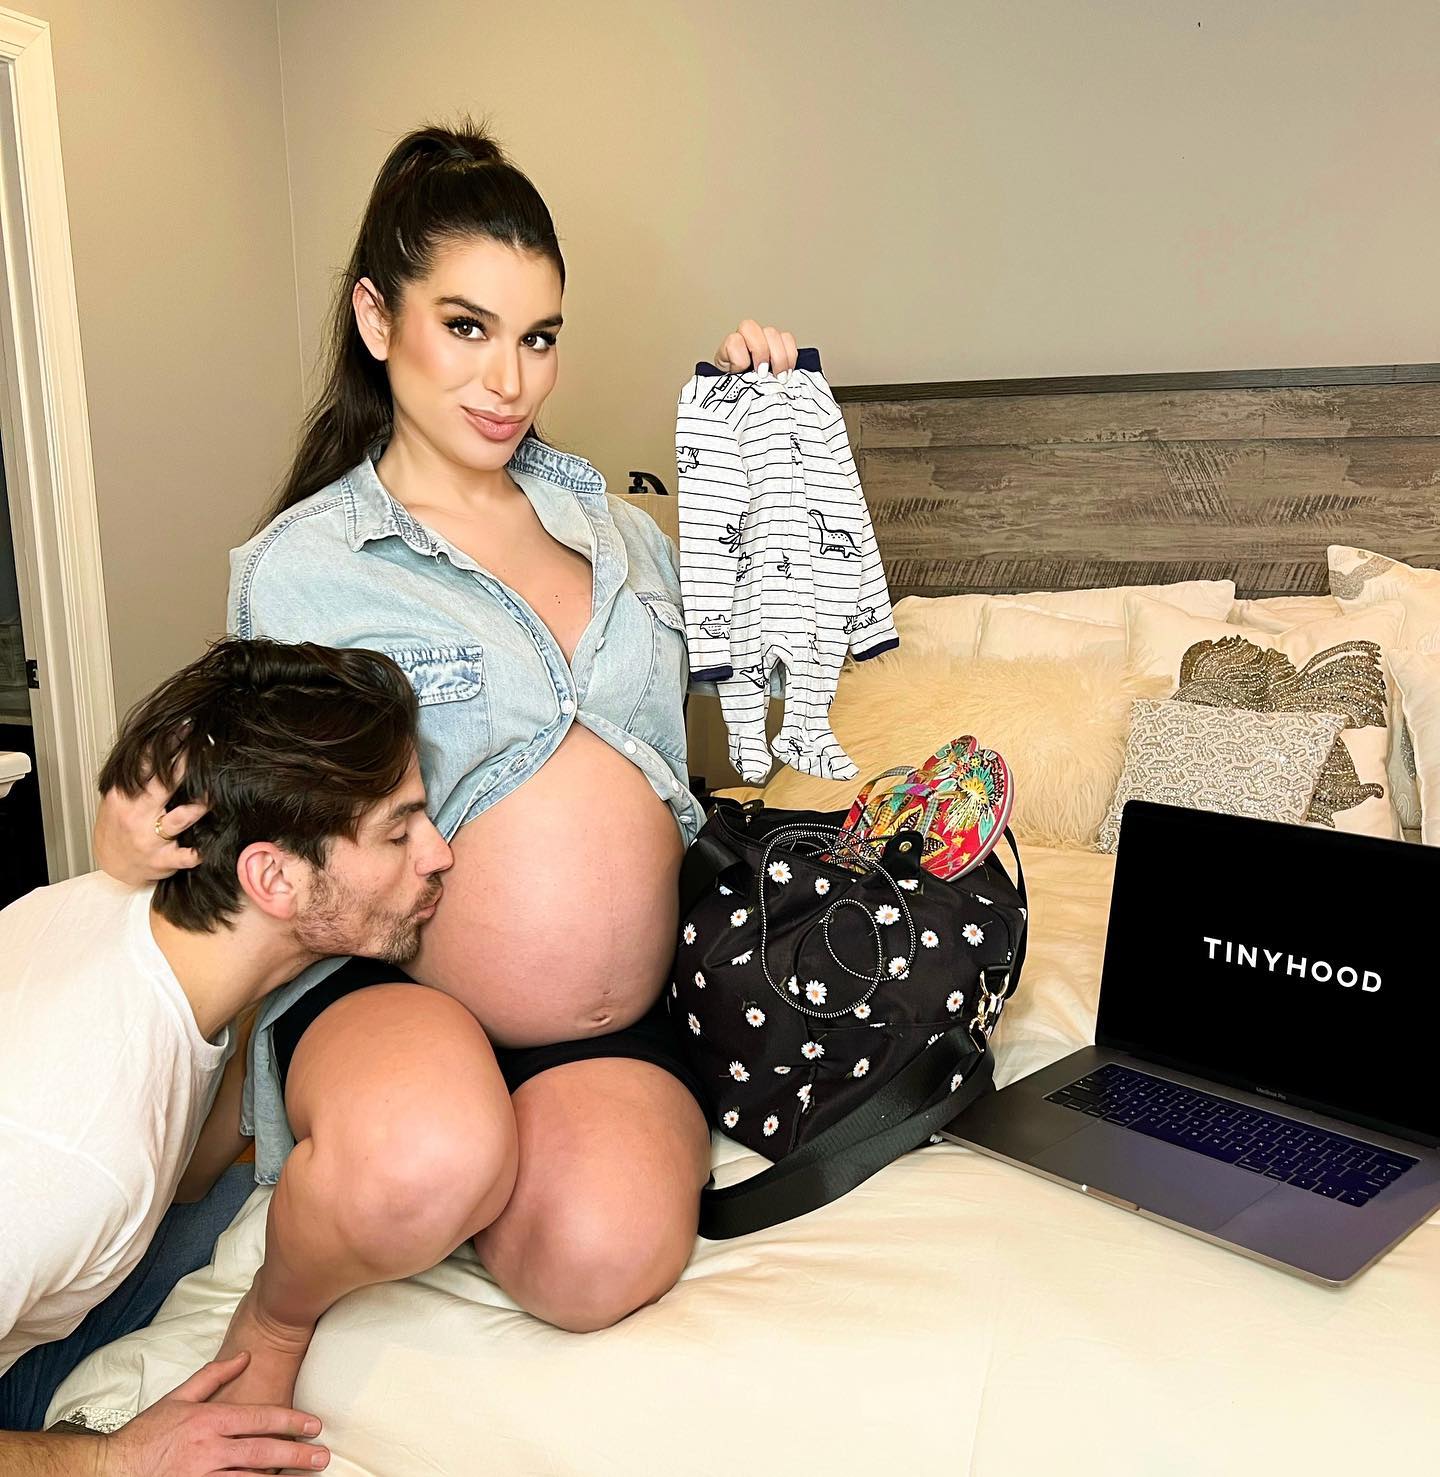 Bachelor in Paradises Pregnant Ashley Iaconettis Baby Bump Photos